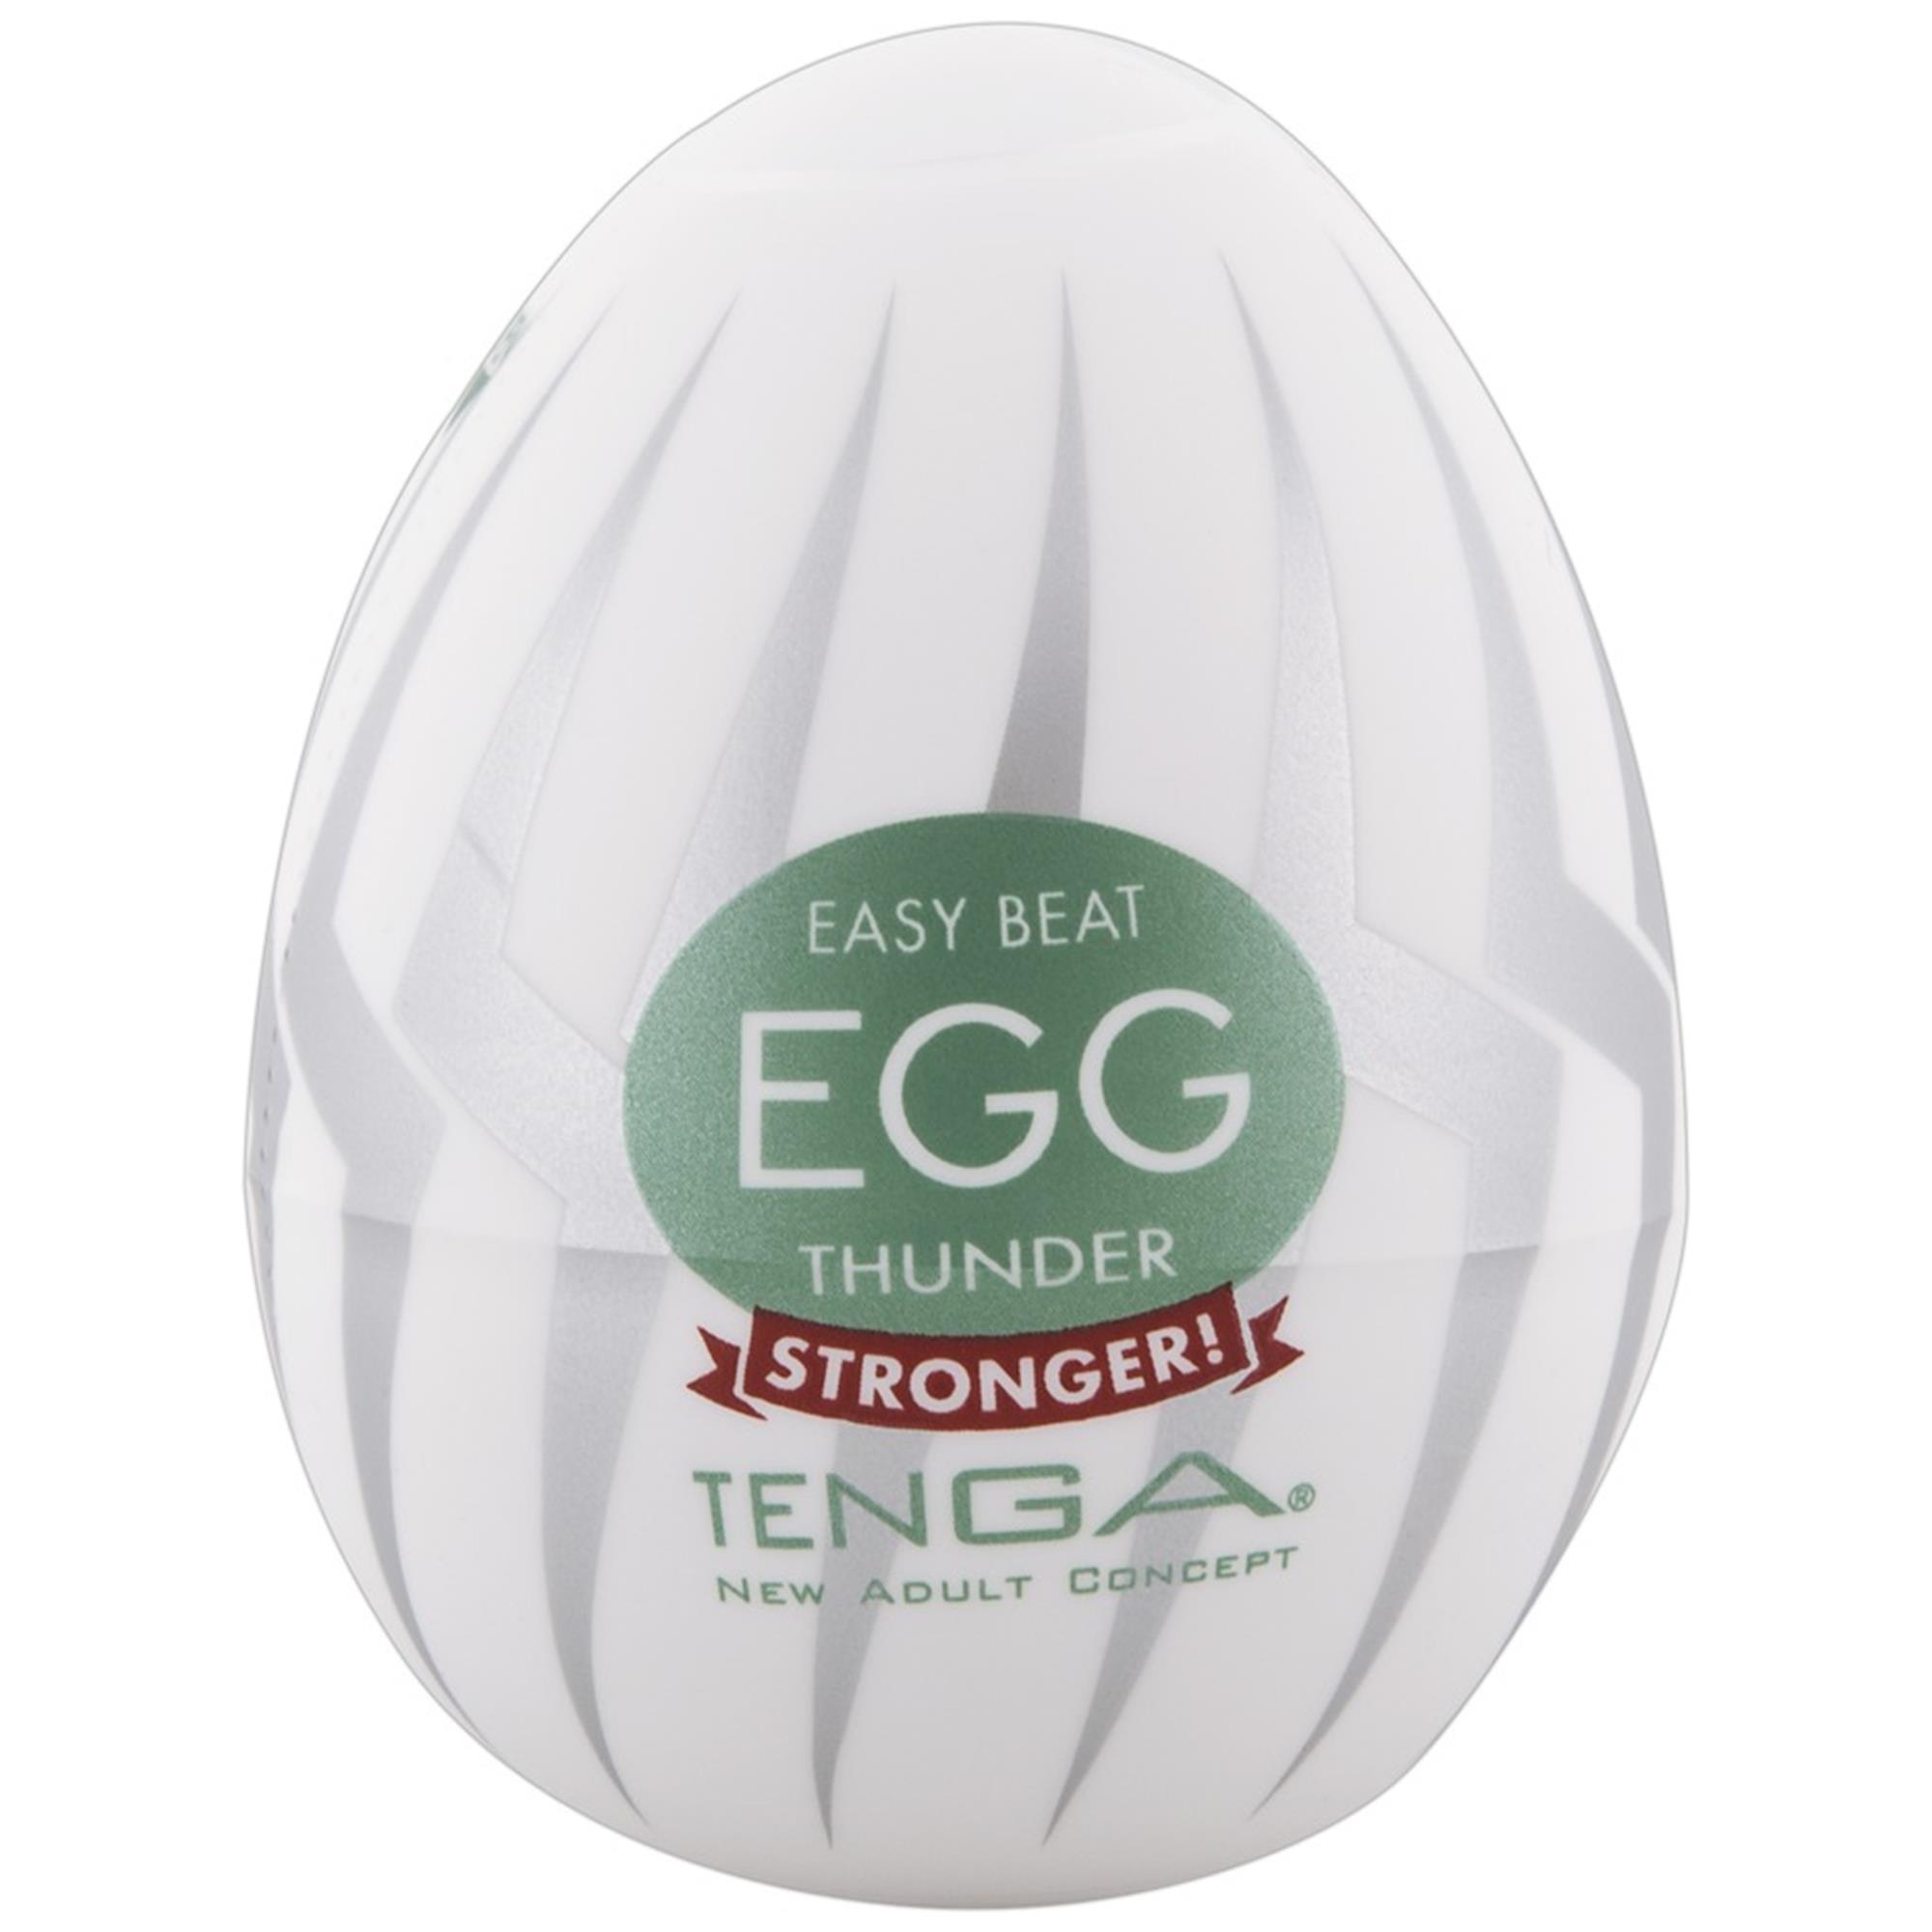 Tenga Egg Thunder thumbnail